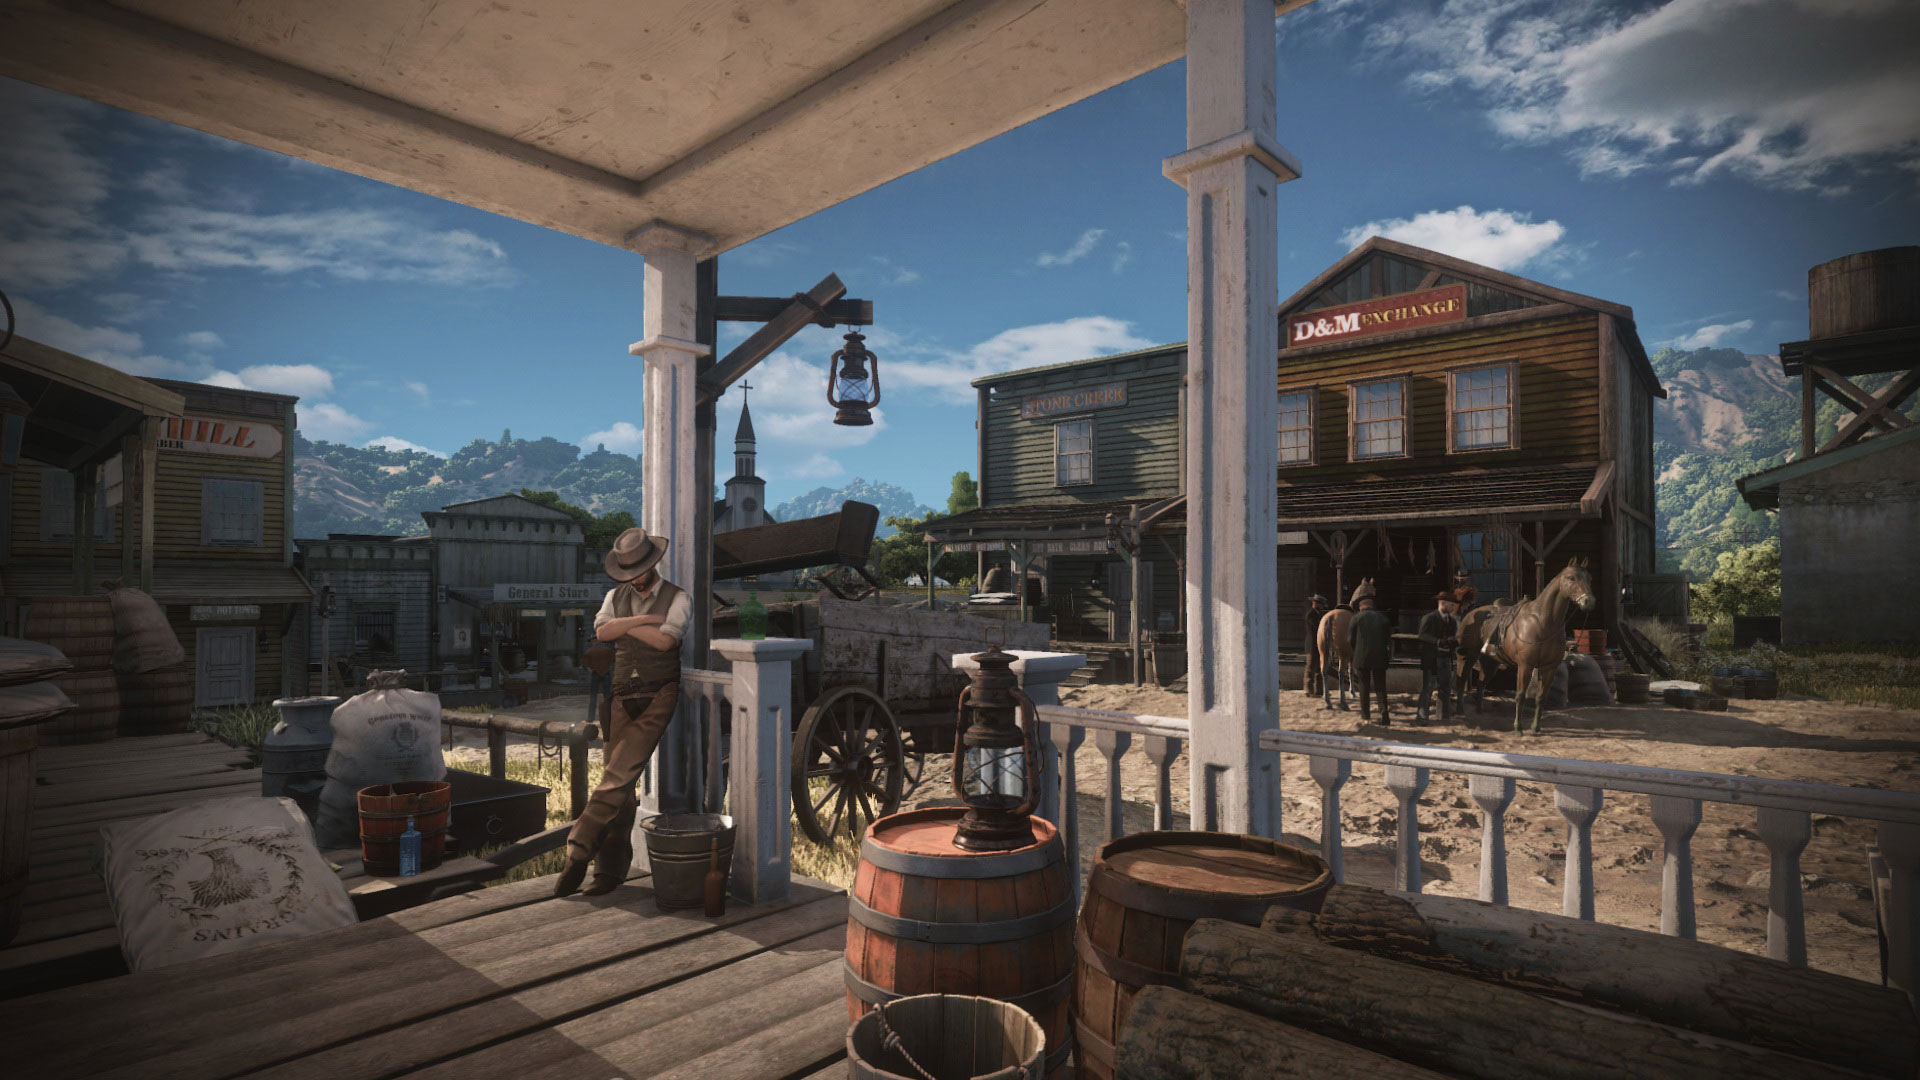 La imagen filtrada del supuesto Red Dead Redemption 2, pertenece a otro juego tipo Western